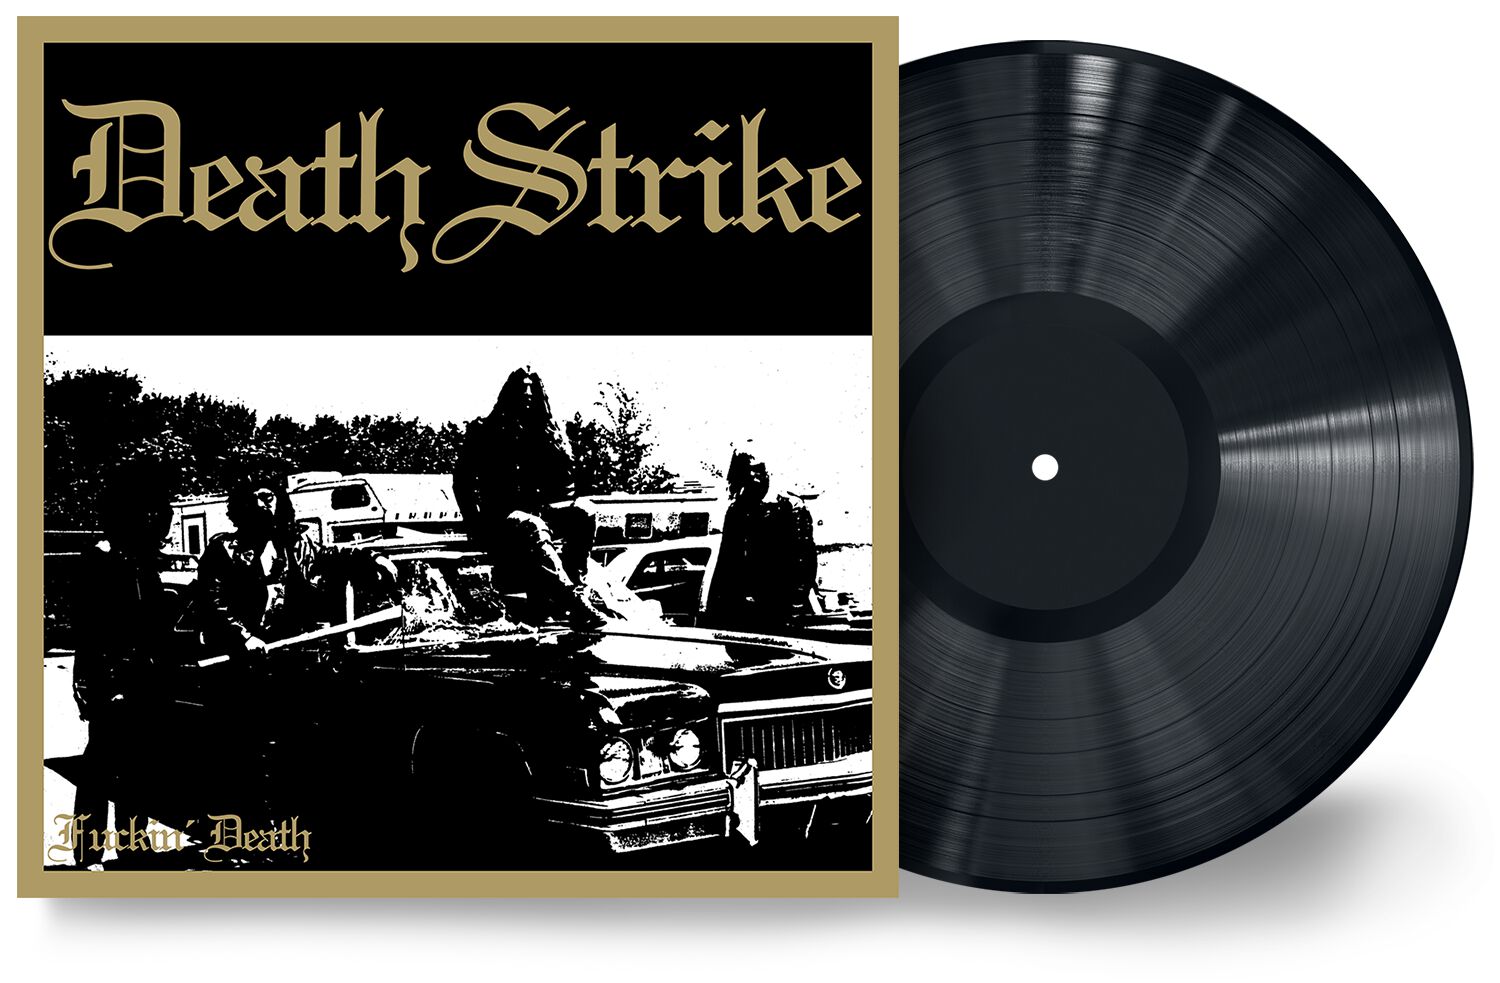 Fuckin' death LP von Death Strike